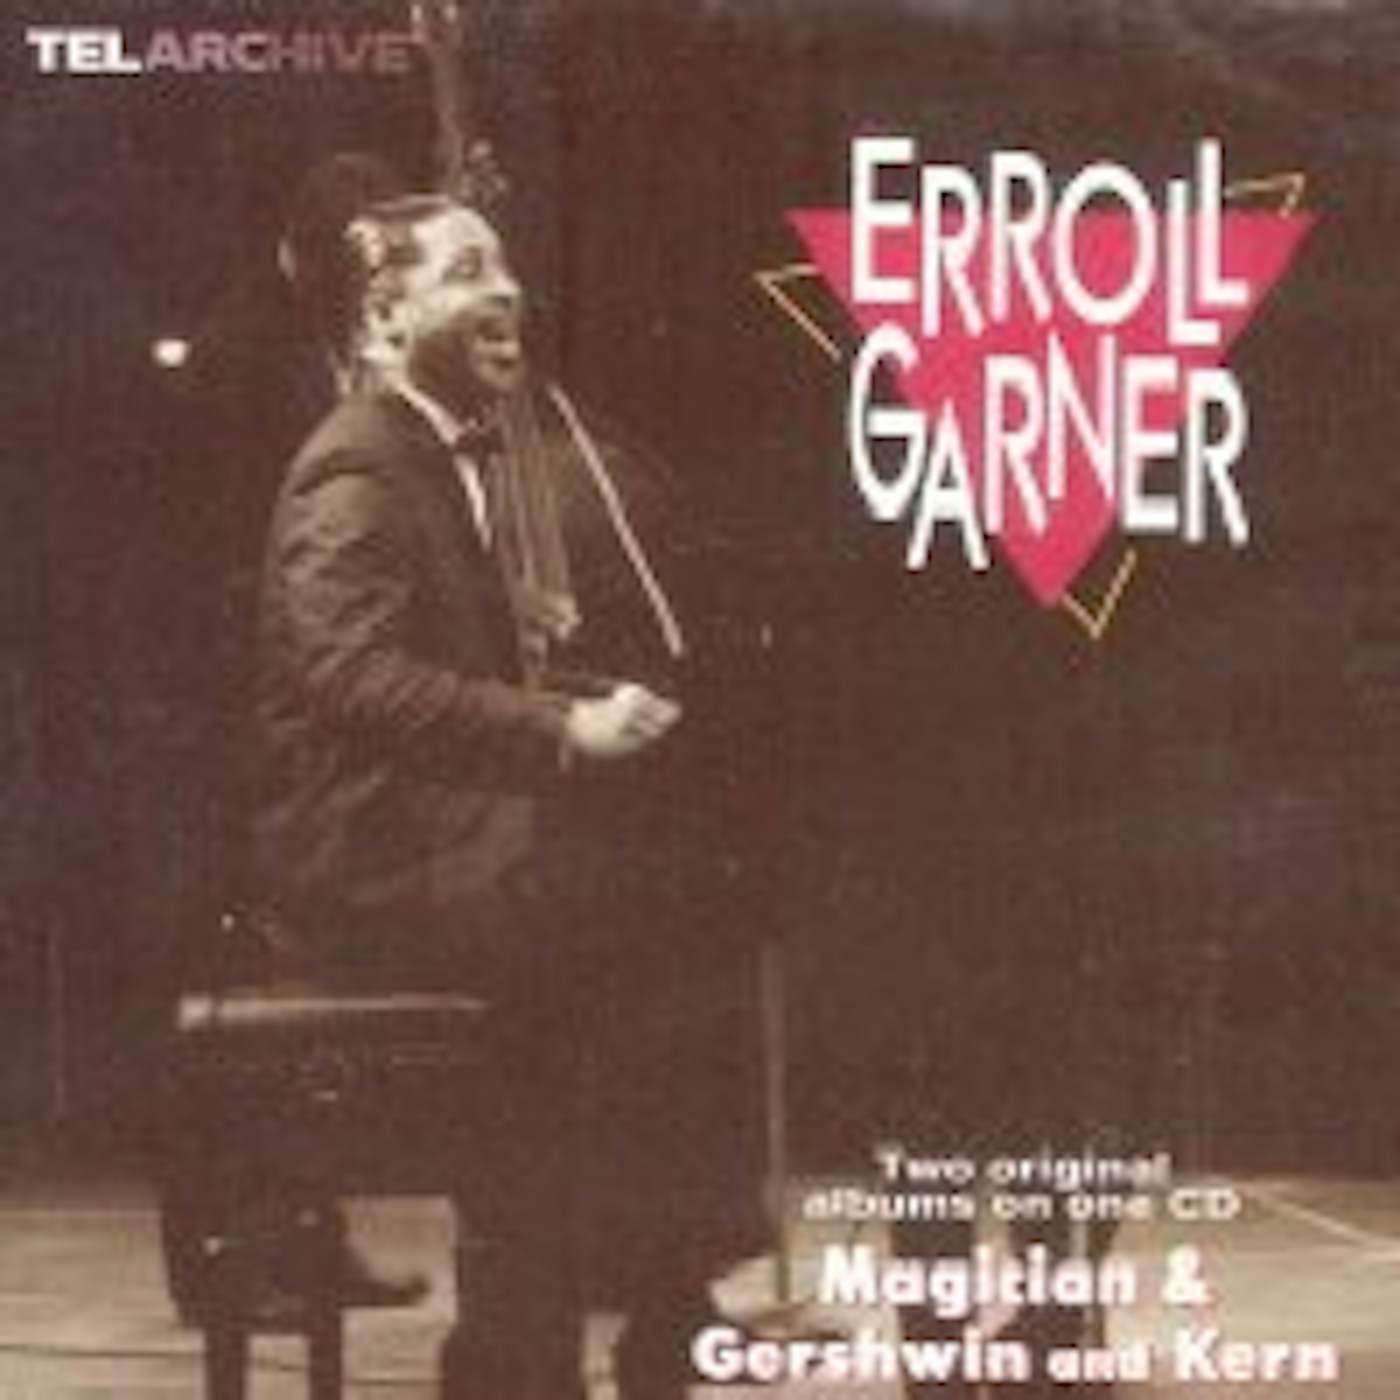 Erroll Garner MAGICIAN-GERSHWIN & KERN CD